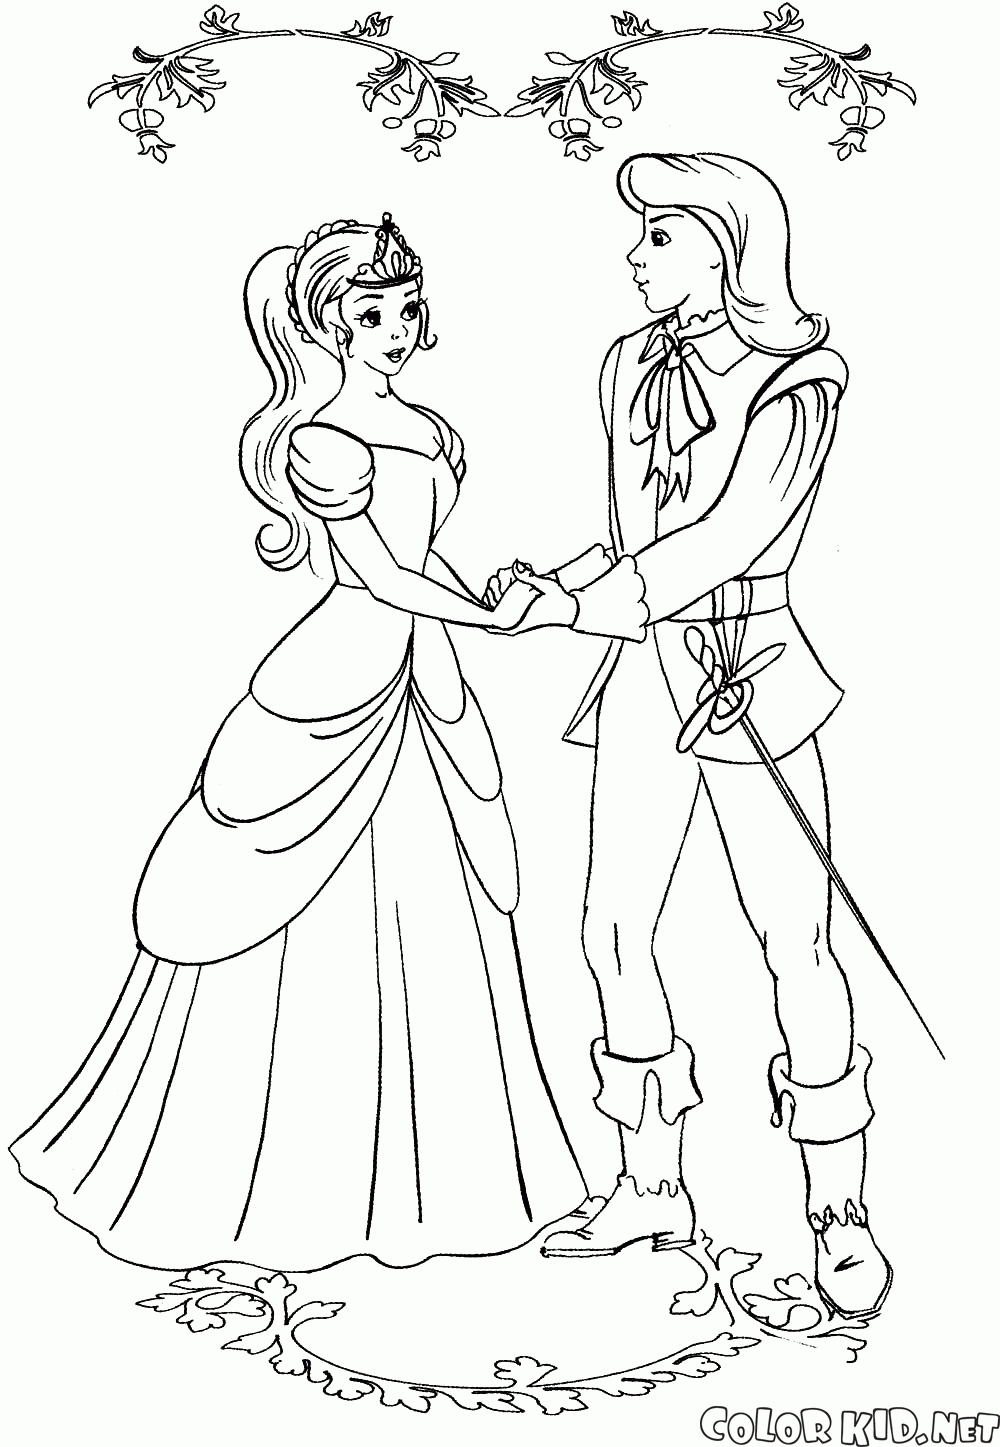 El príncipe conoció a la princesa